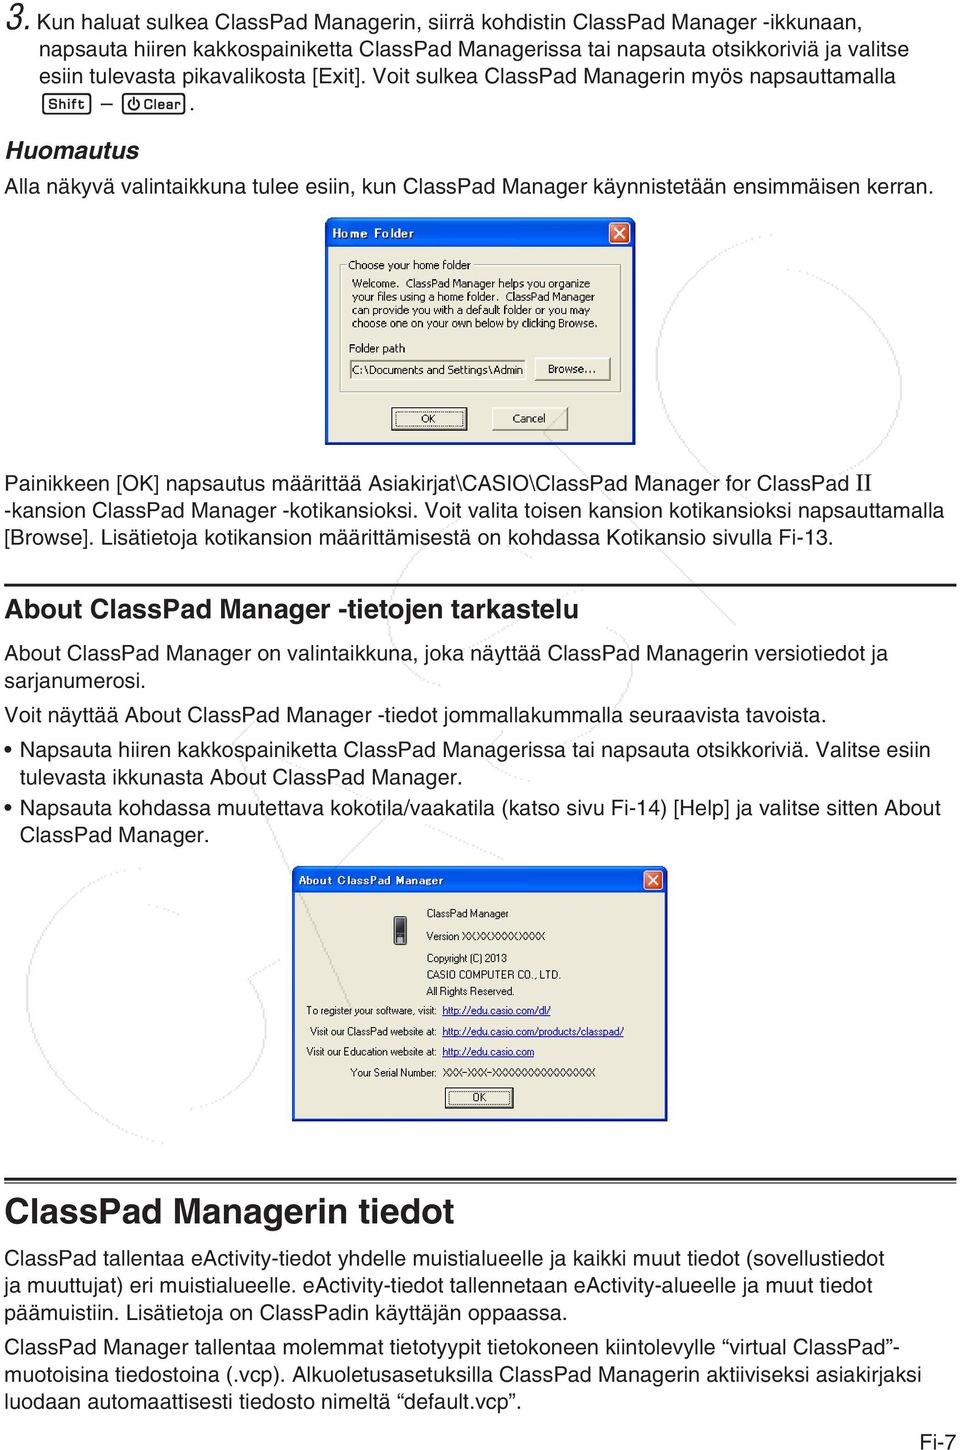 Painikkeen [OK] napsautus määrittää Asiakirjat\CASIO\ClassPad Manager for ClassPad II -kansion ClassPad Manager -kotikansioksi. Voit valita toisen kansion kotikansioksi napsauttamalla [Browse].